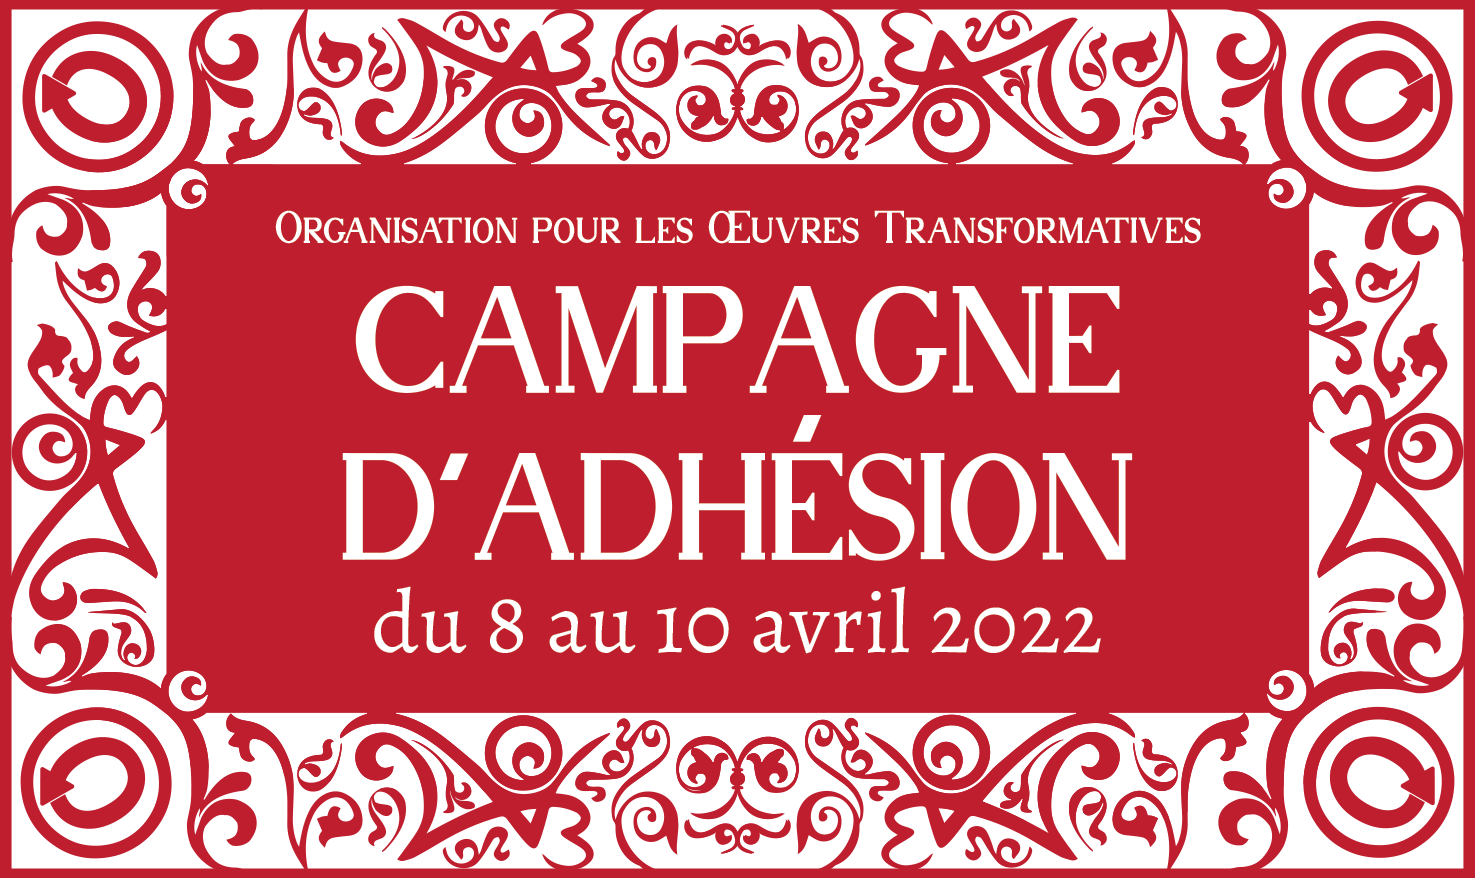 Campagne d’Adhésion de l’Organisation pour les Œuvres Transformatives, du 8 au 10 avril 2022